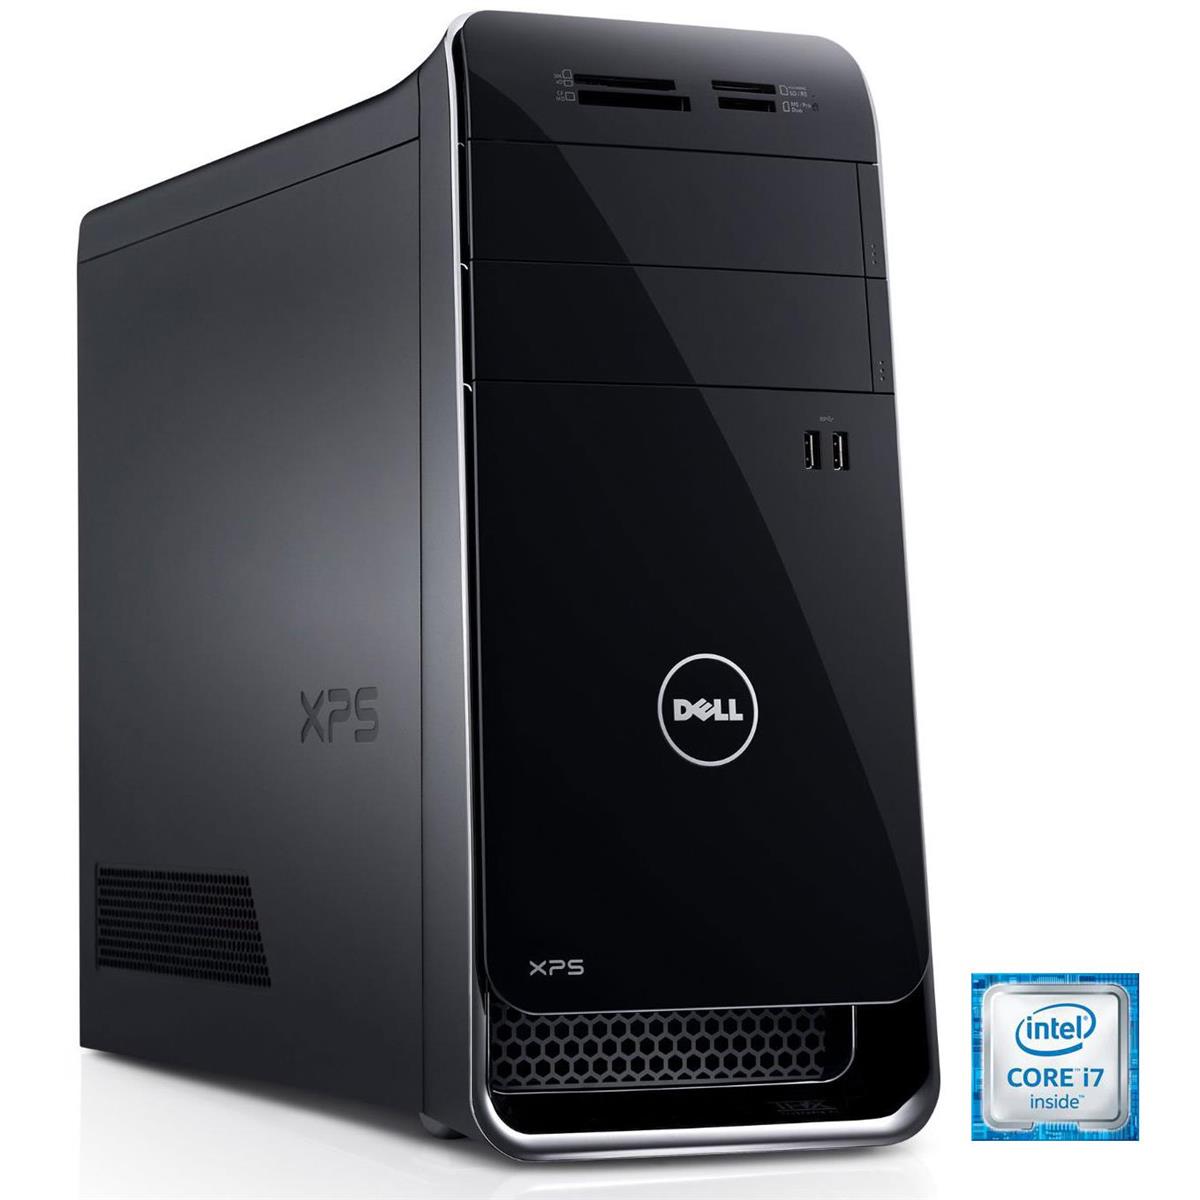 Dell XPS 8900 Intel Core i7 6700 / GTX 745